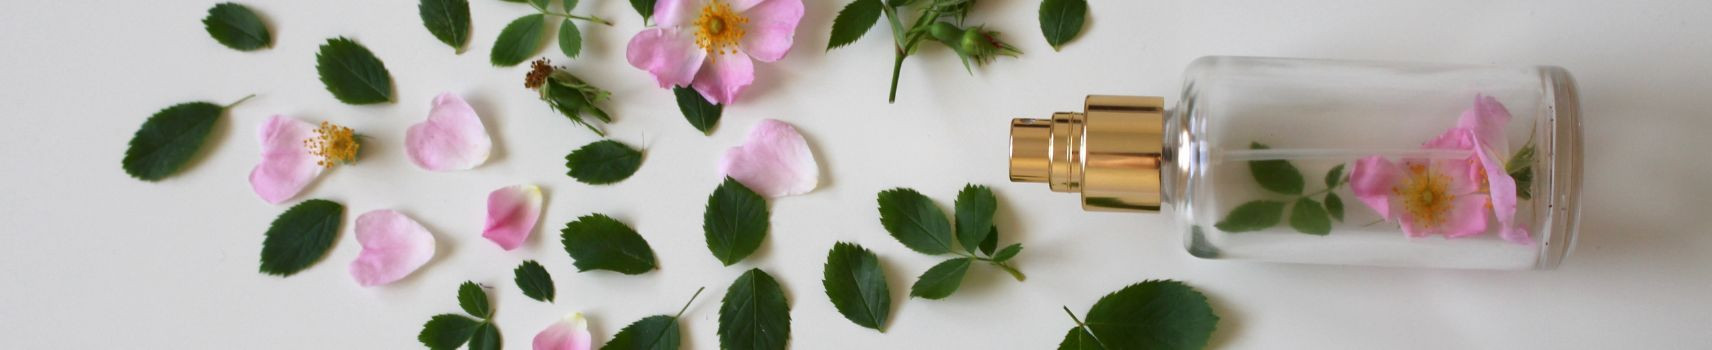 Des senteurs et fragrances uniques à découvrir chez nos parfumeurs